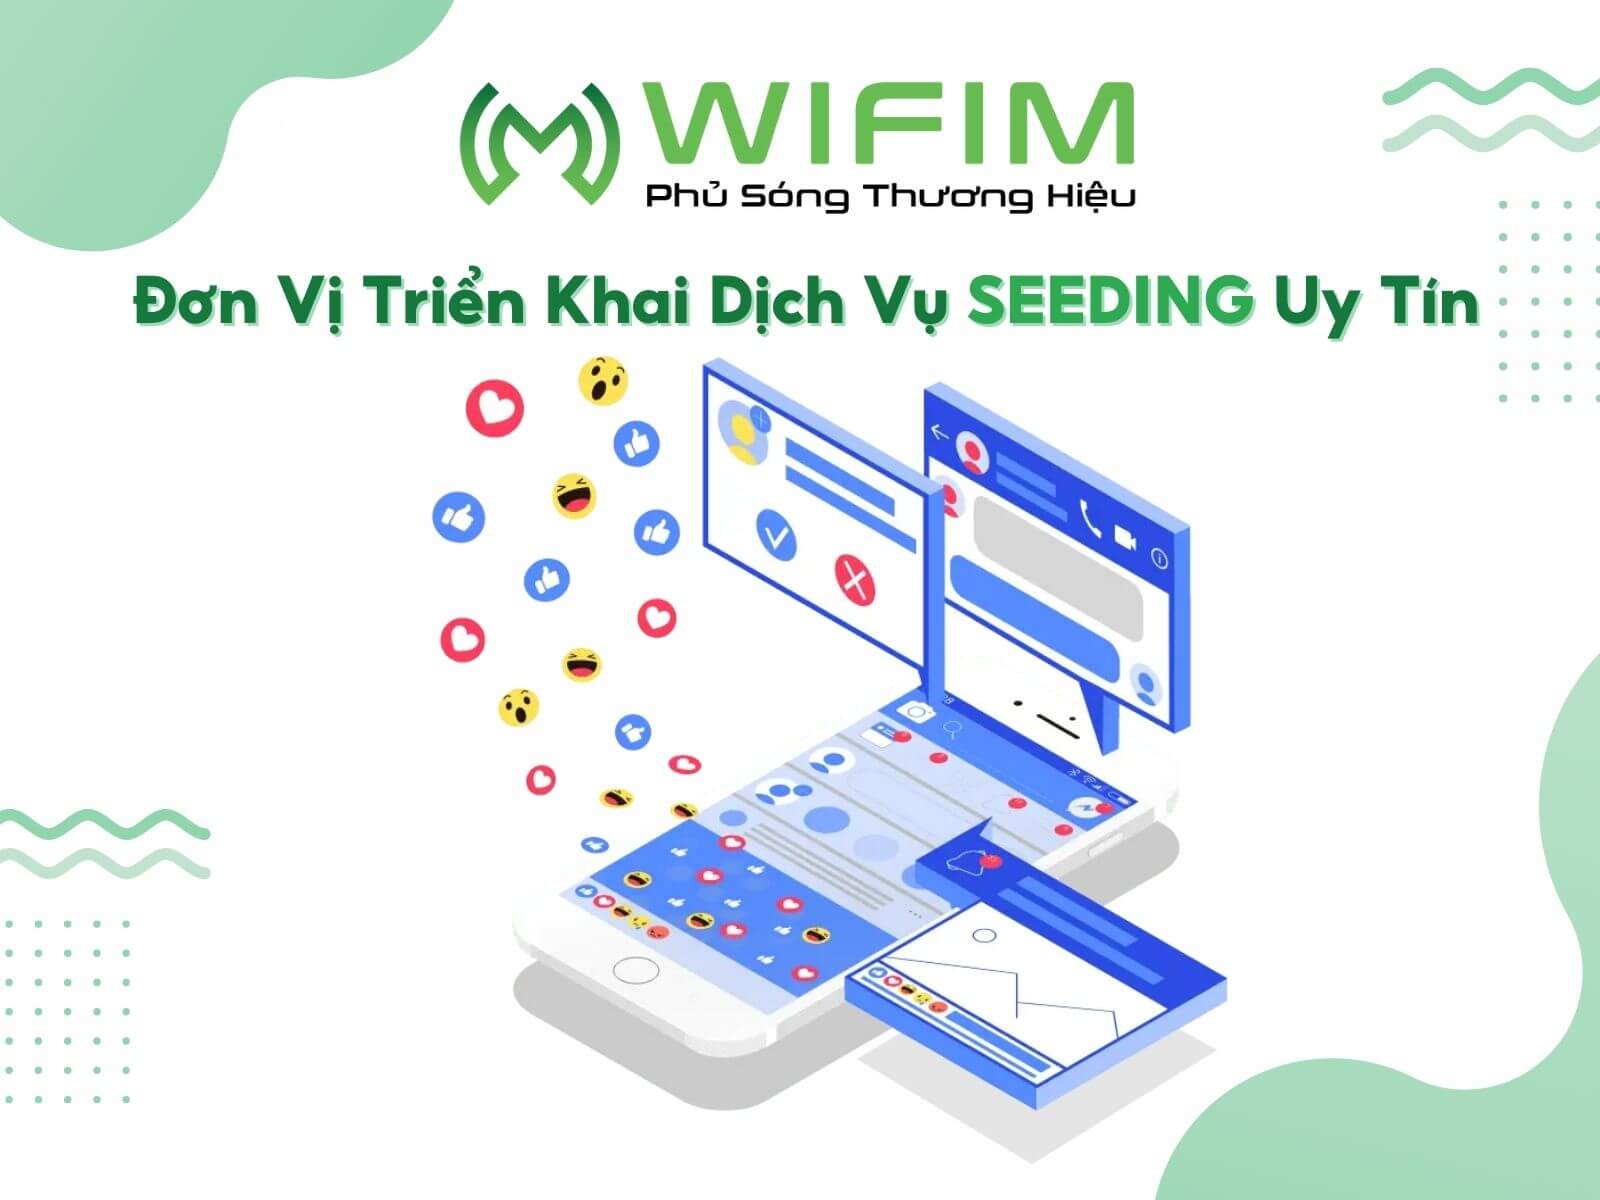 WIFIM JSC - đơn vị triển khai dịch vụ seeding uy tín 